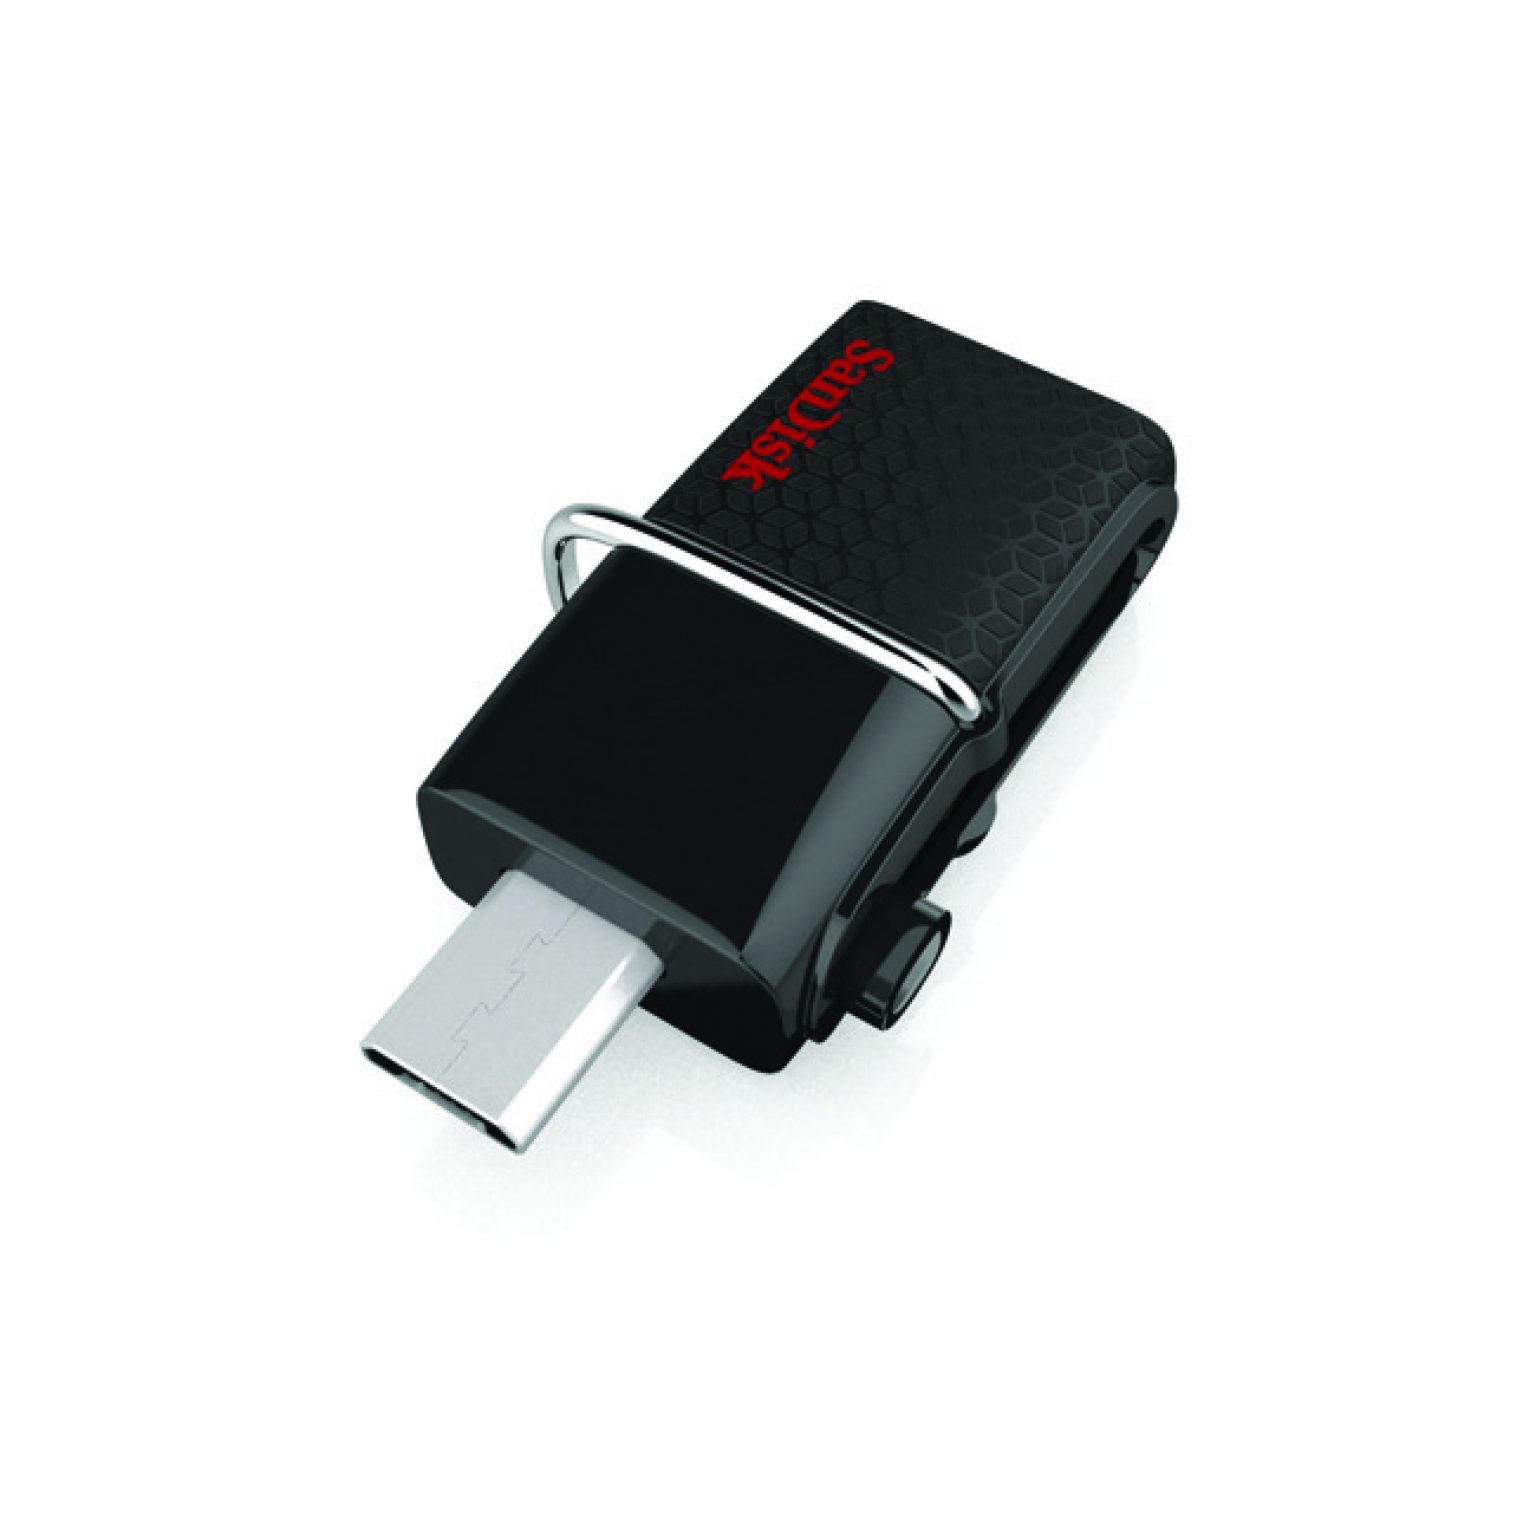 SanDisk 16GBUltra Dual USB Drive 3.0 SDDD2 1